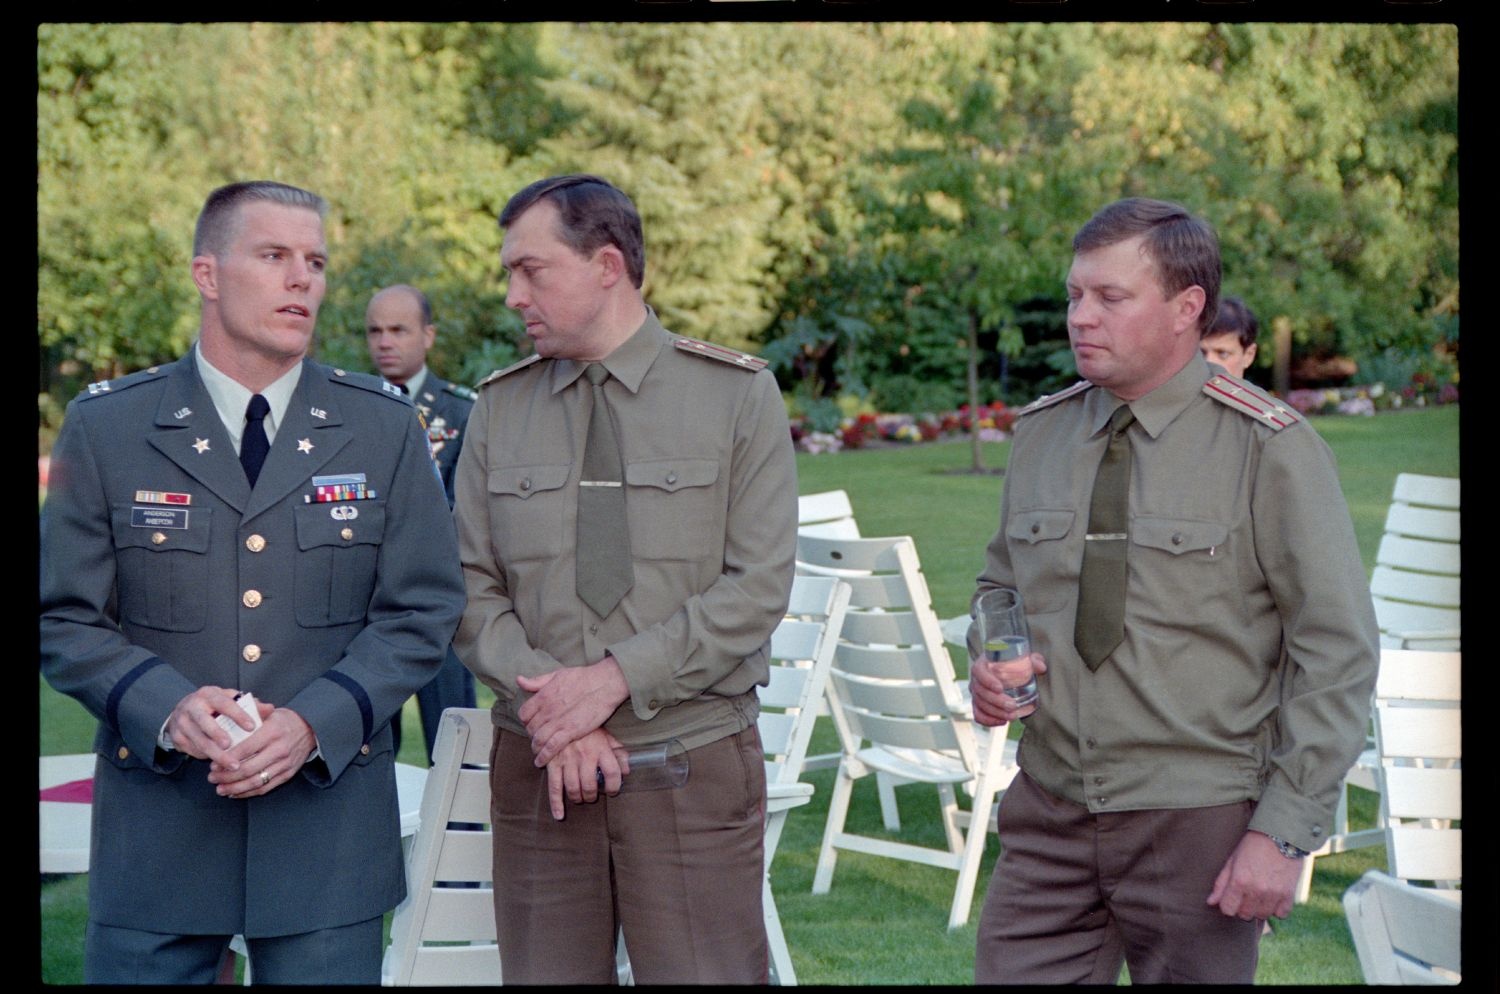 Fotografie: Informelles Treffen mit sowjetischen Offizieren in der Residenz von Brigadier General Sidney Shachnow in Berlin-Dahlem (AlliiertenMuseum/U.S. Army Photograph Public Domain Mark)